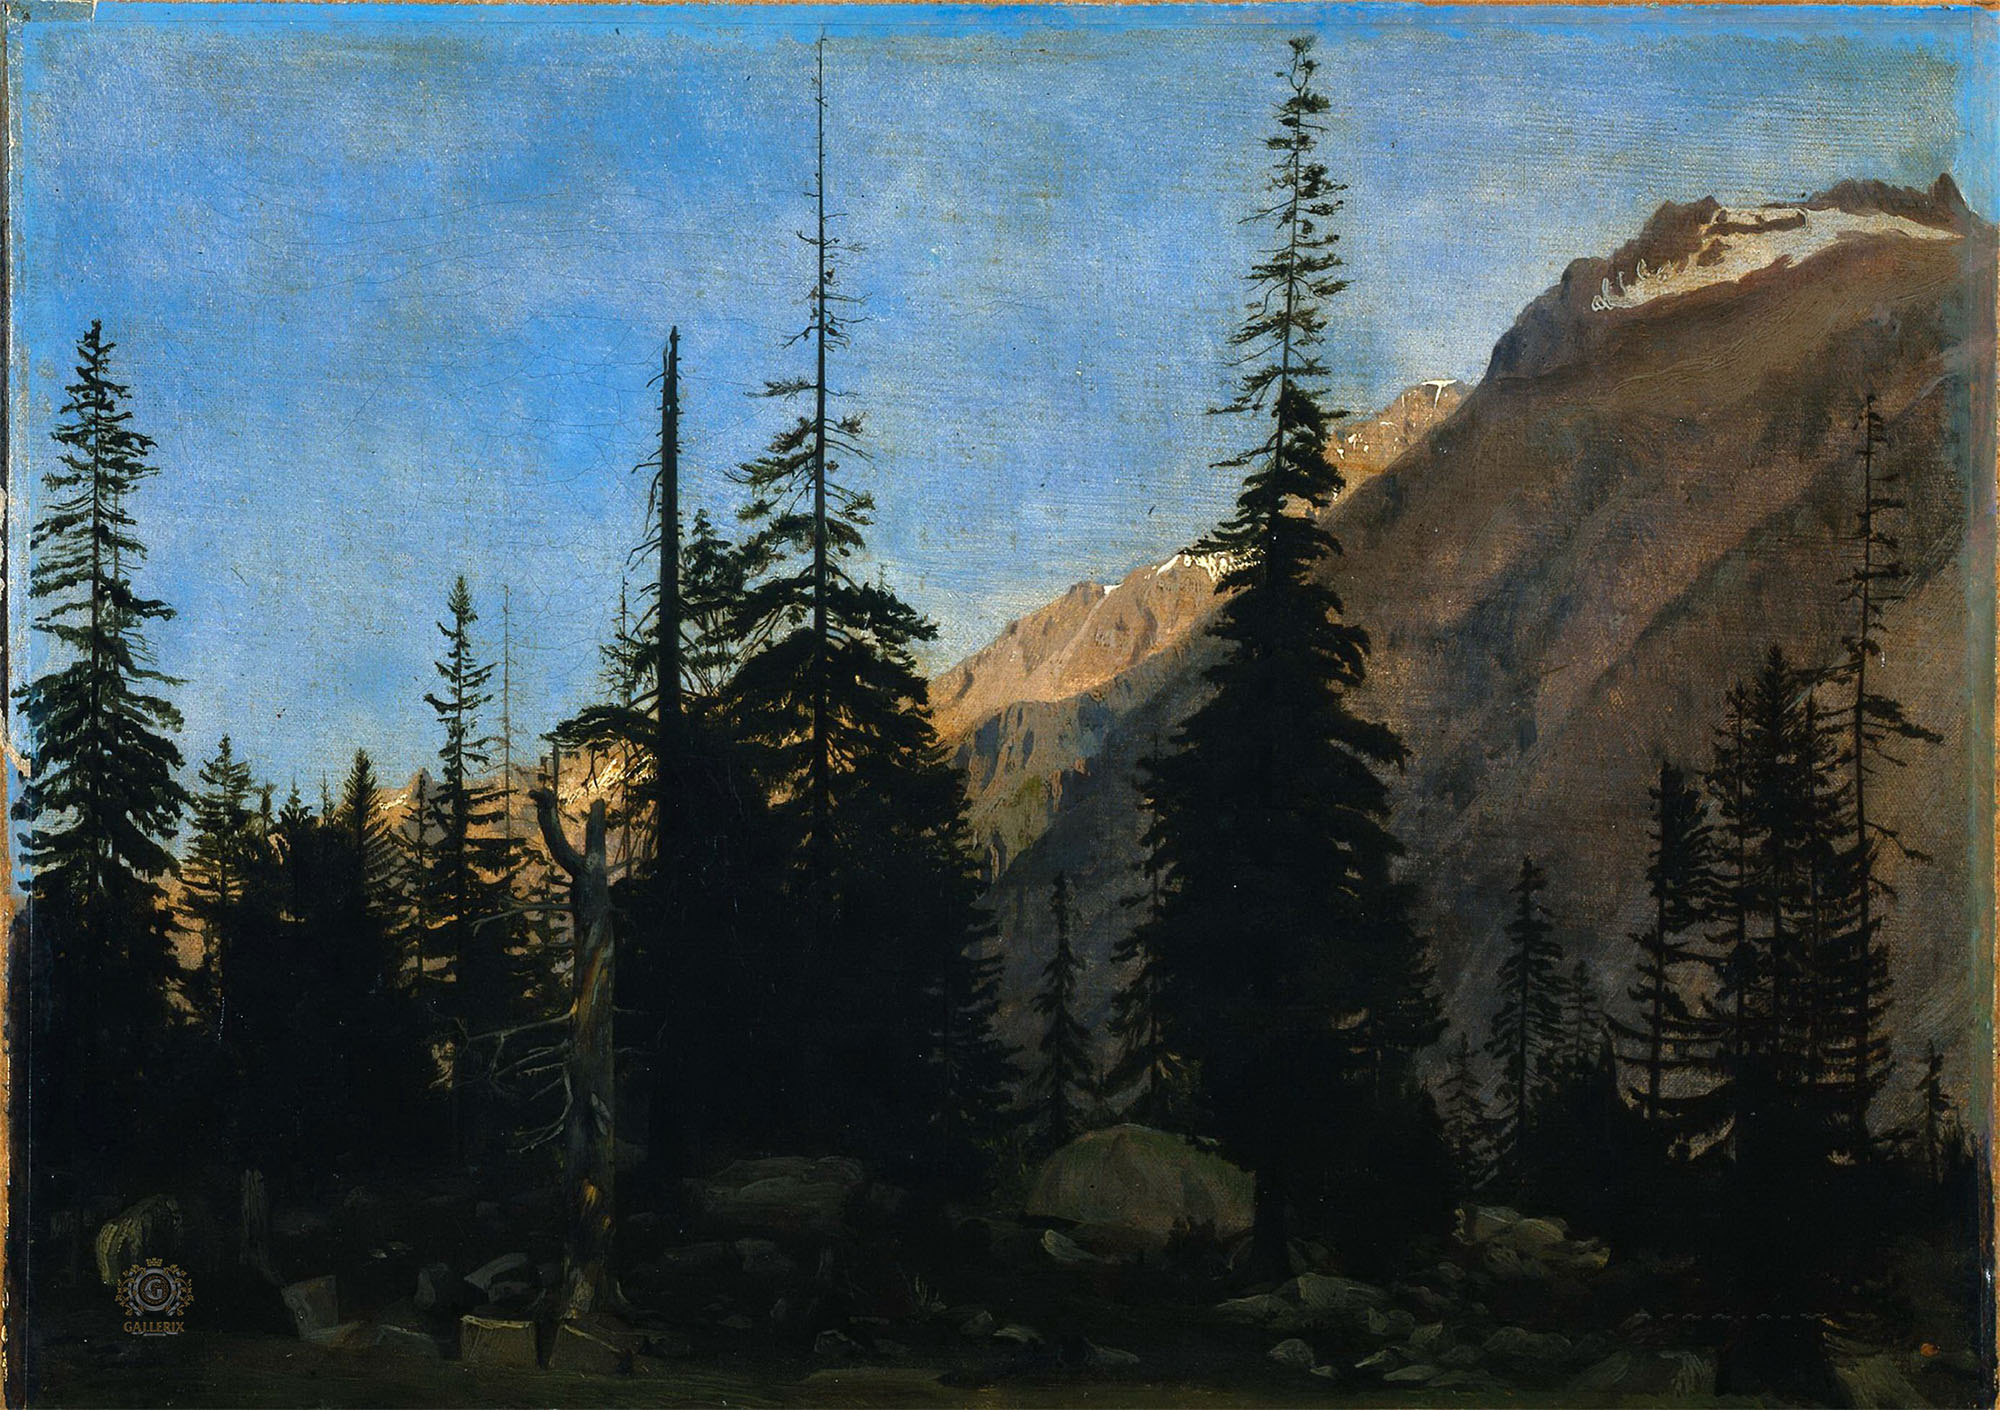 Жан-Леон Жером. "Альпийский пейзаж". 1850-1860. Музей искусств, Кливленд.